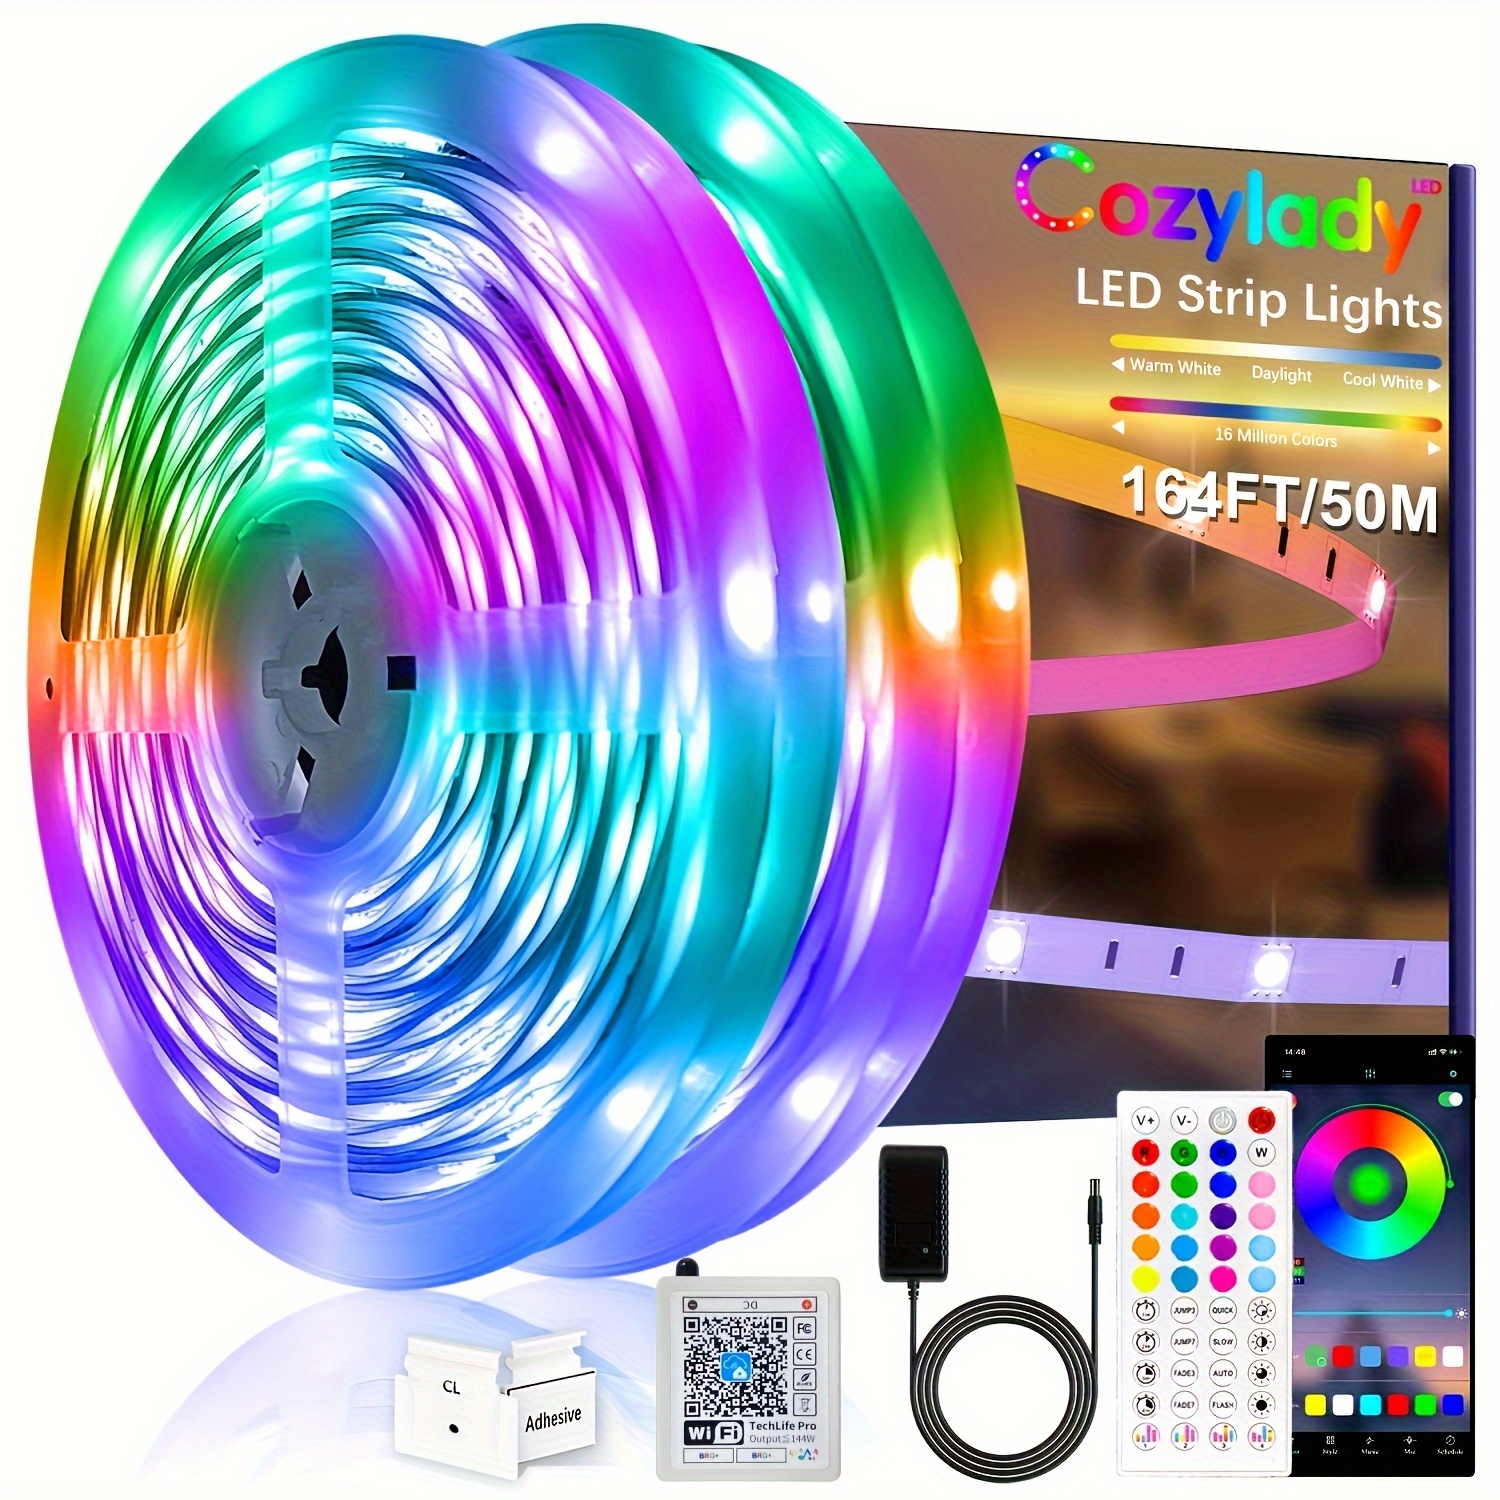 6/9pcs Smart RGB LED Wall Light Color LED Regulable Music - Temu